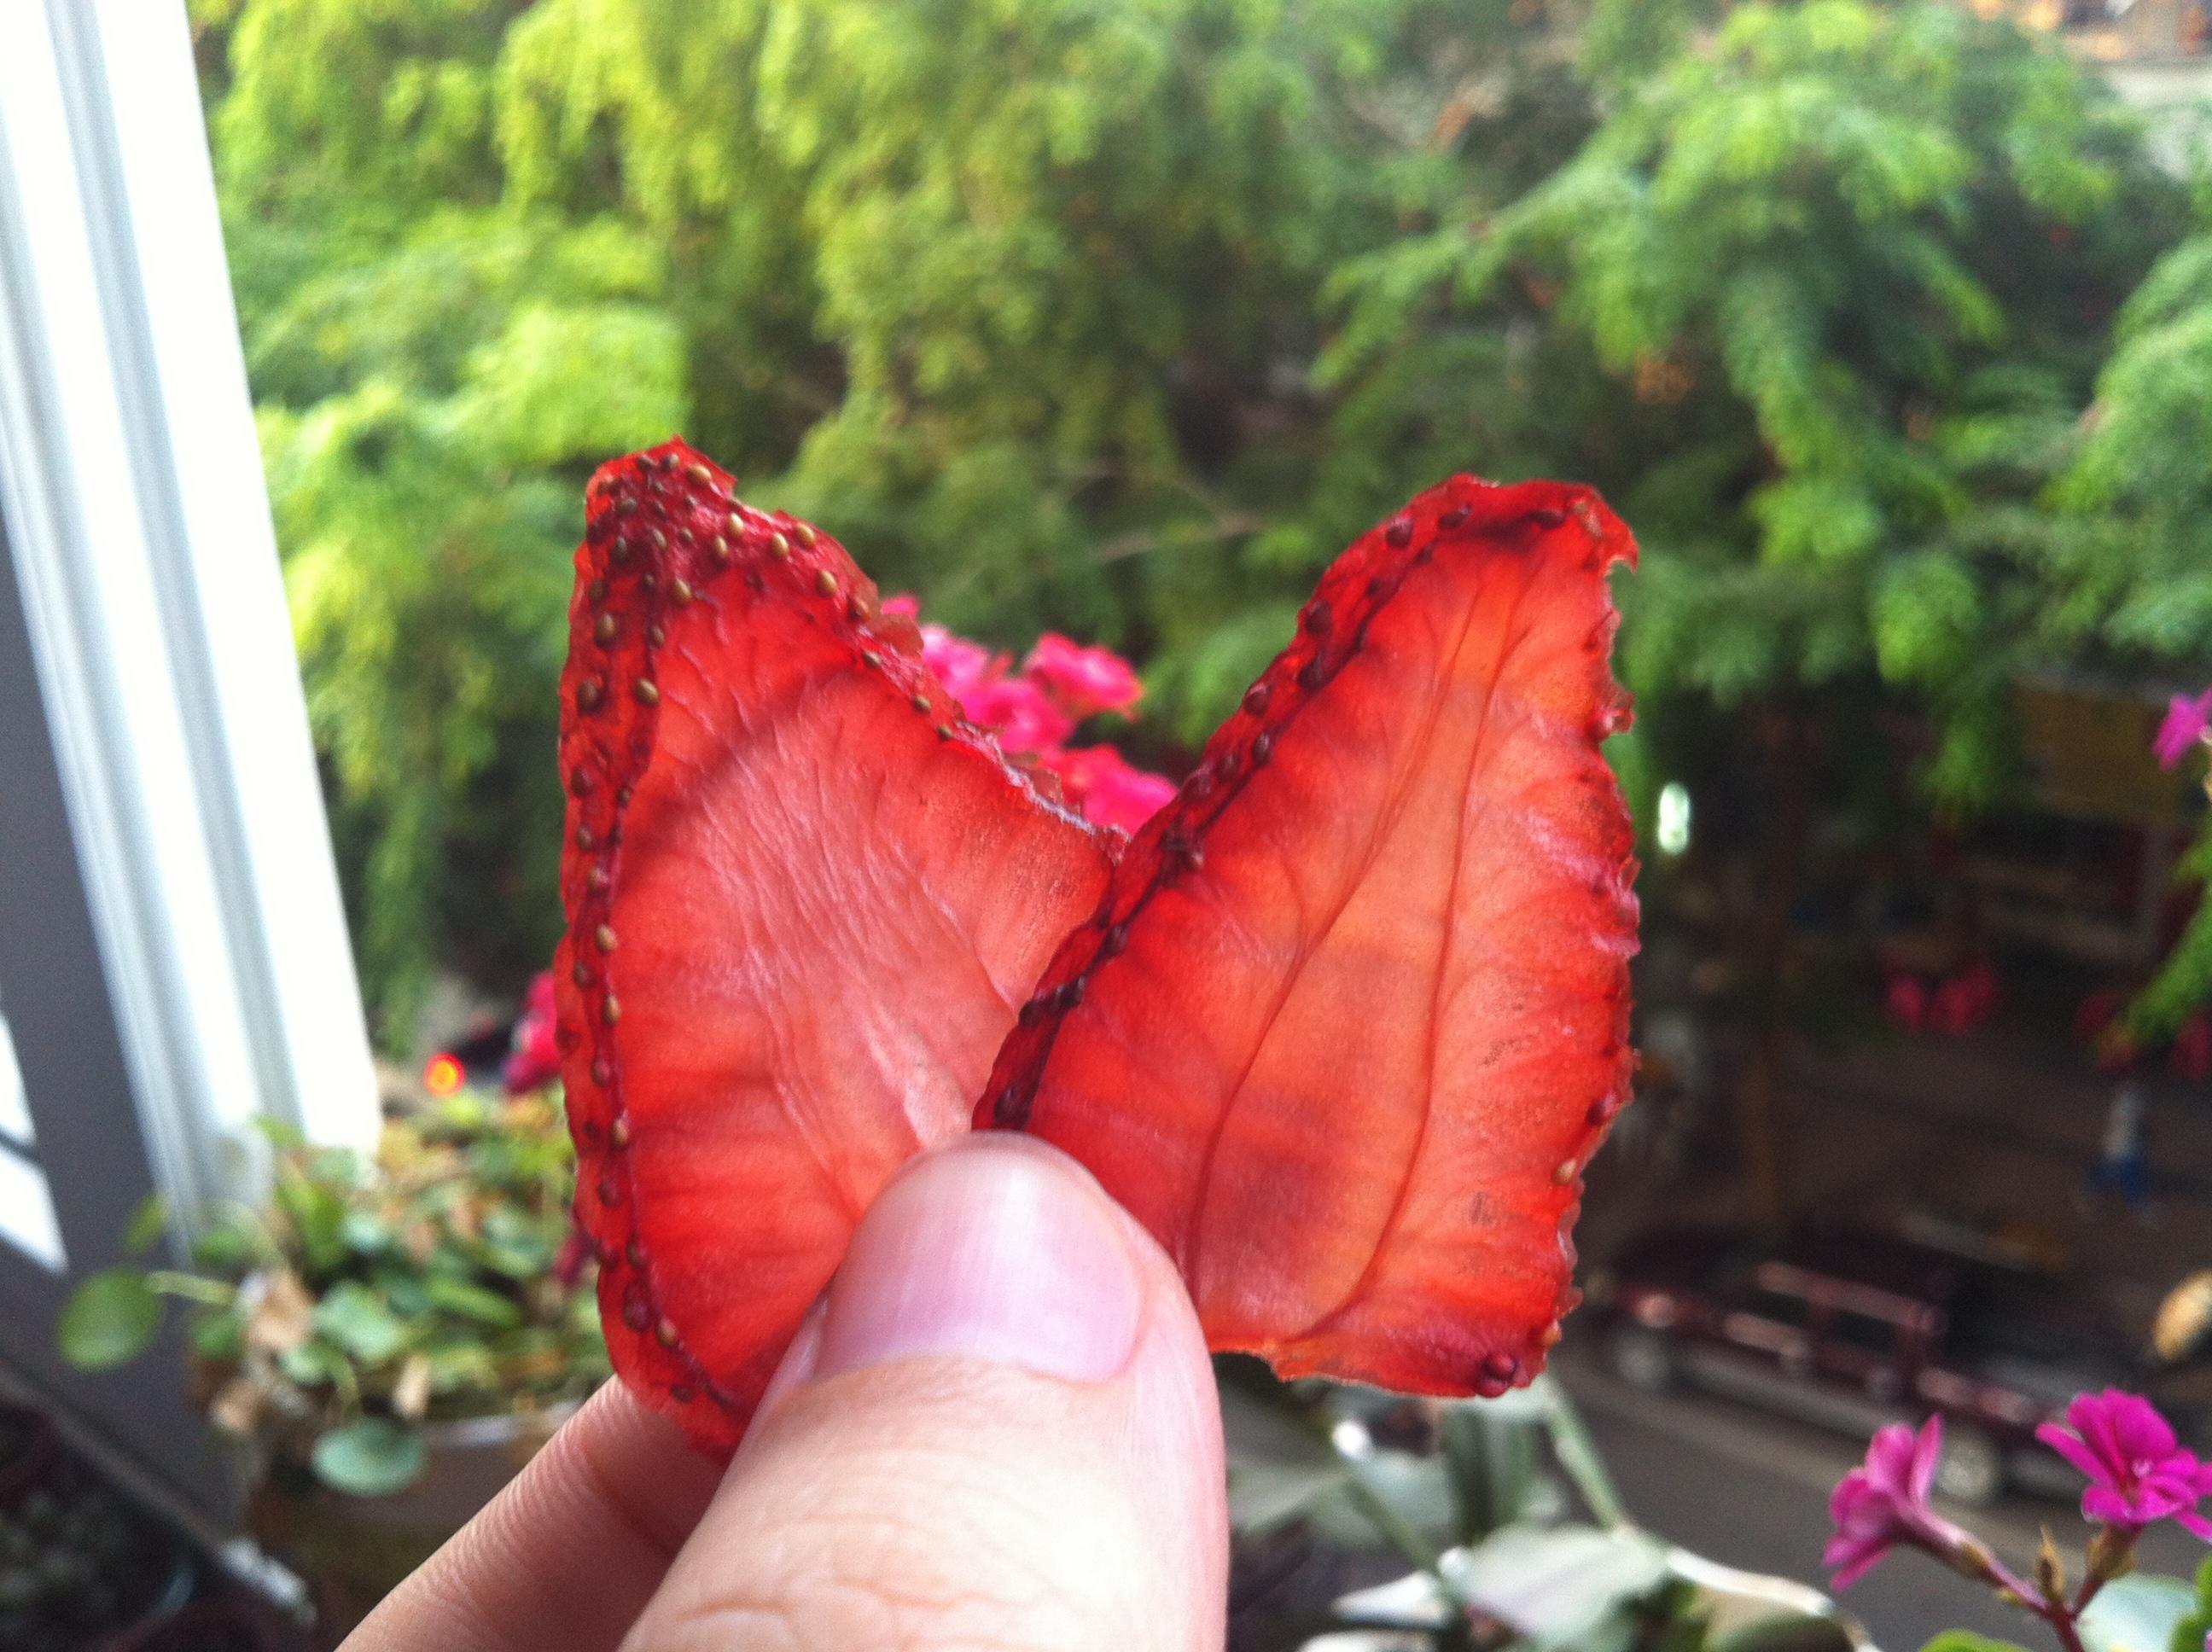 草莓脆片